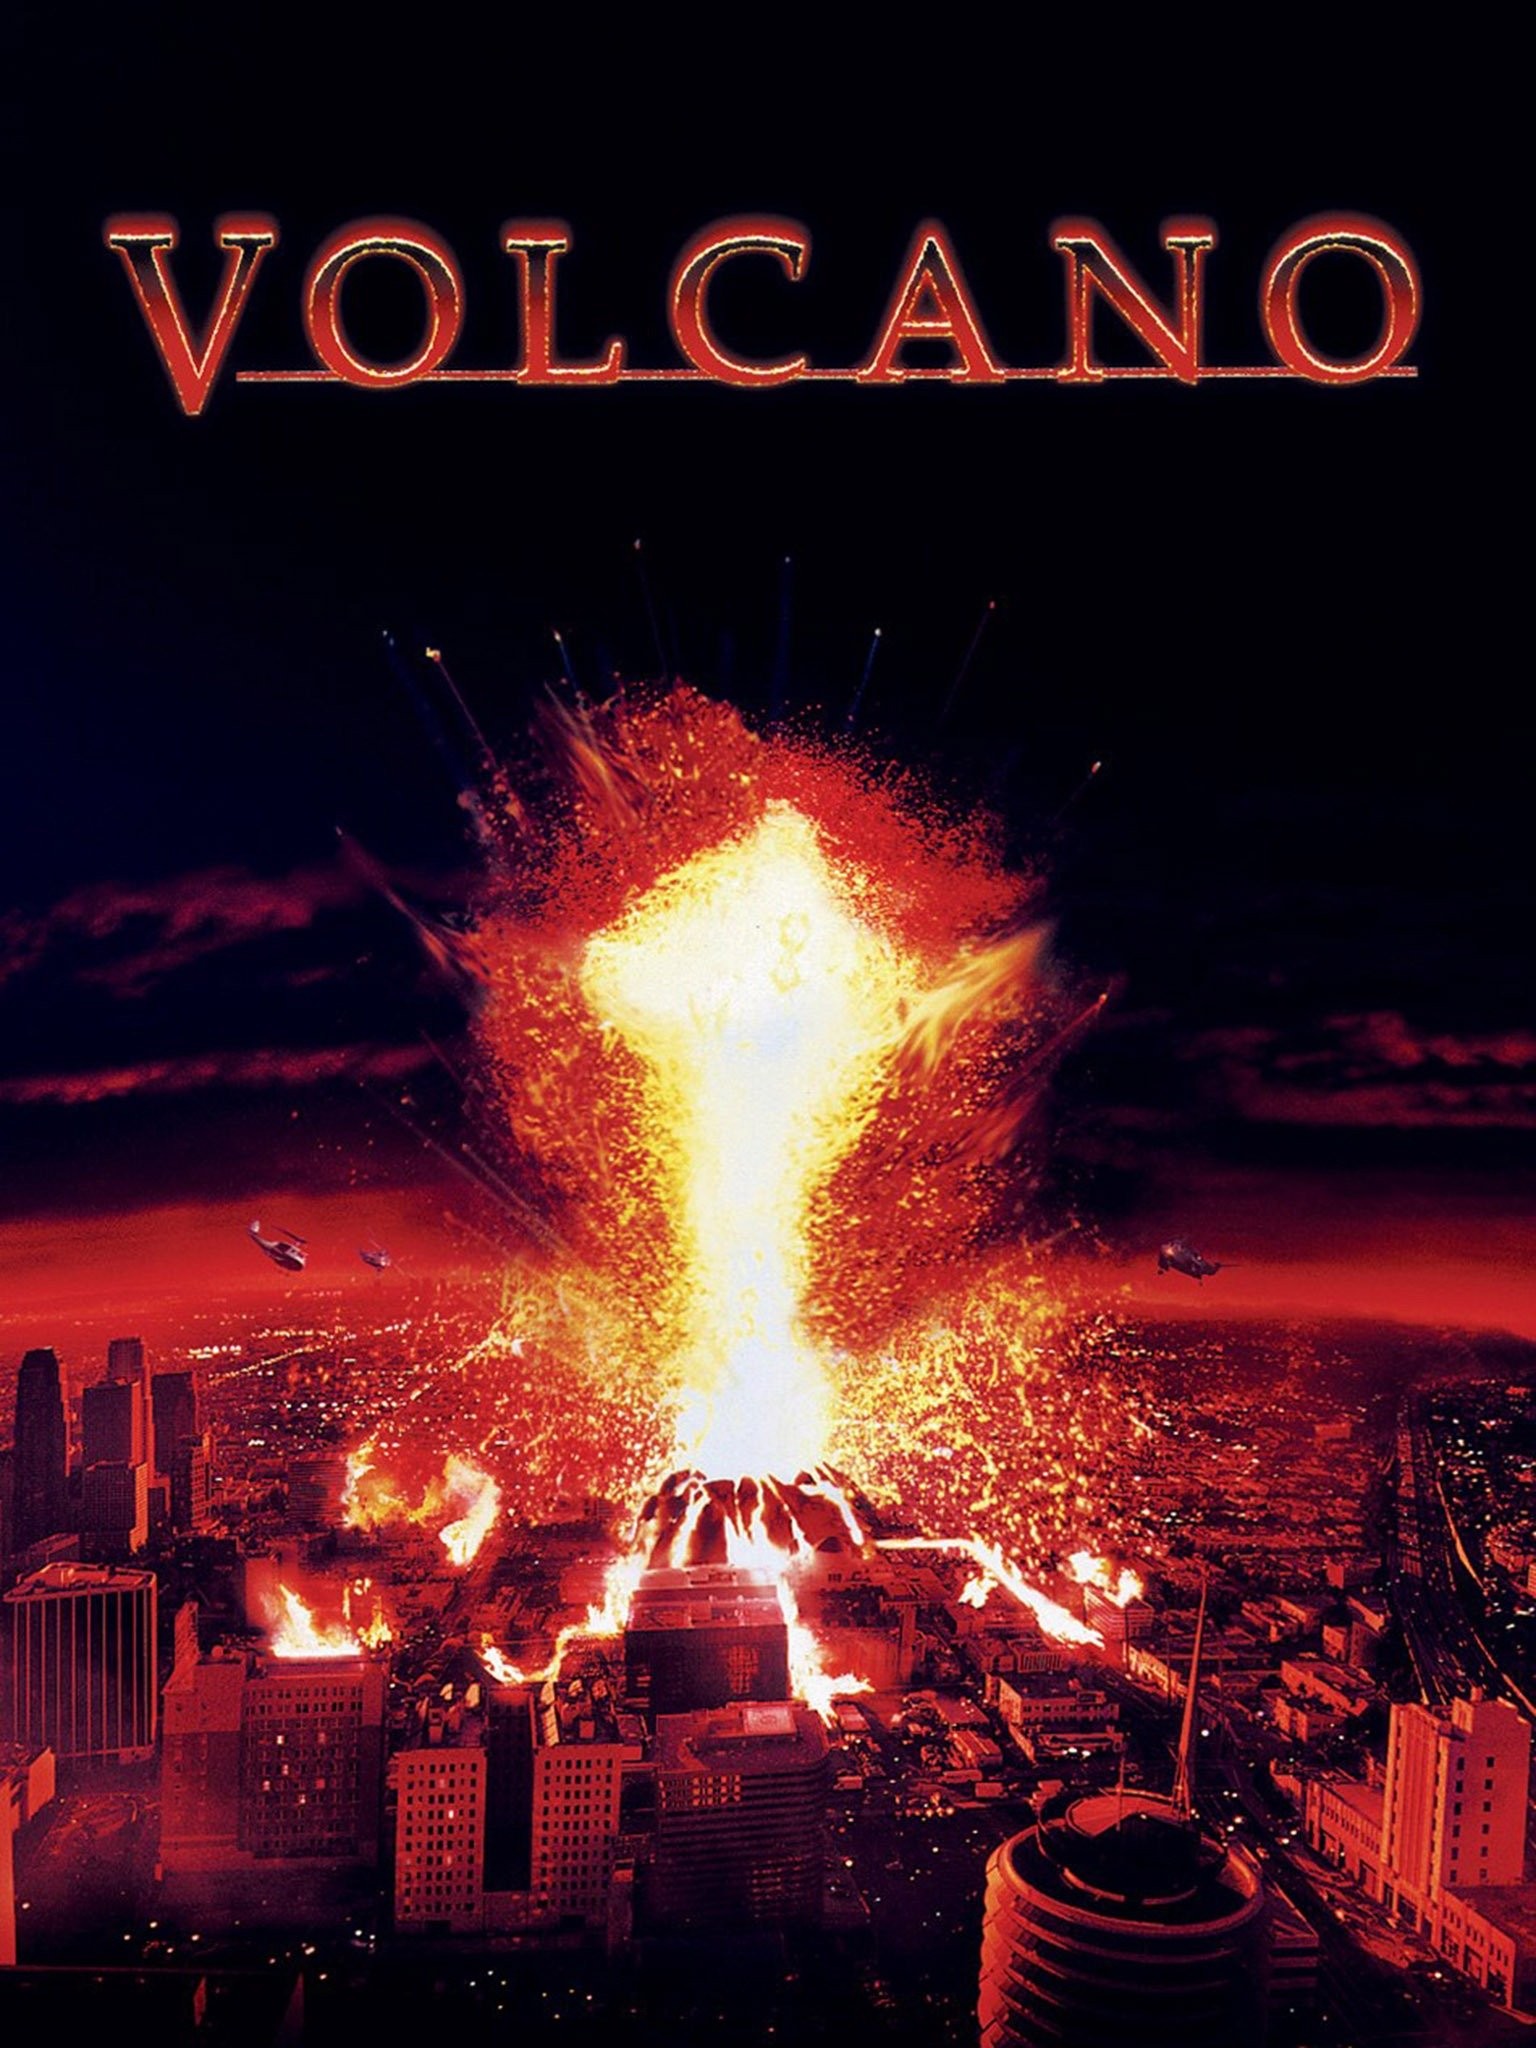 Volcano (1997) ปะทุนรก ล้างปฐพี 